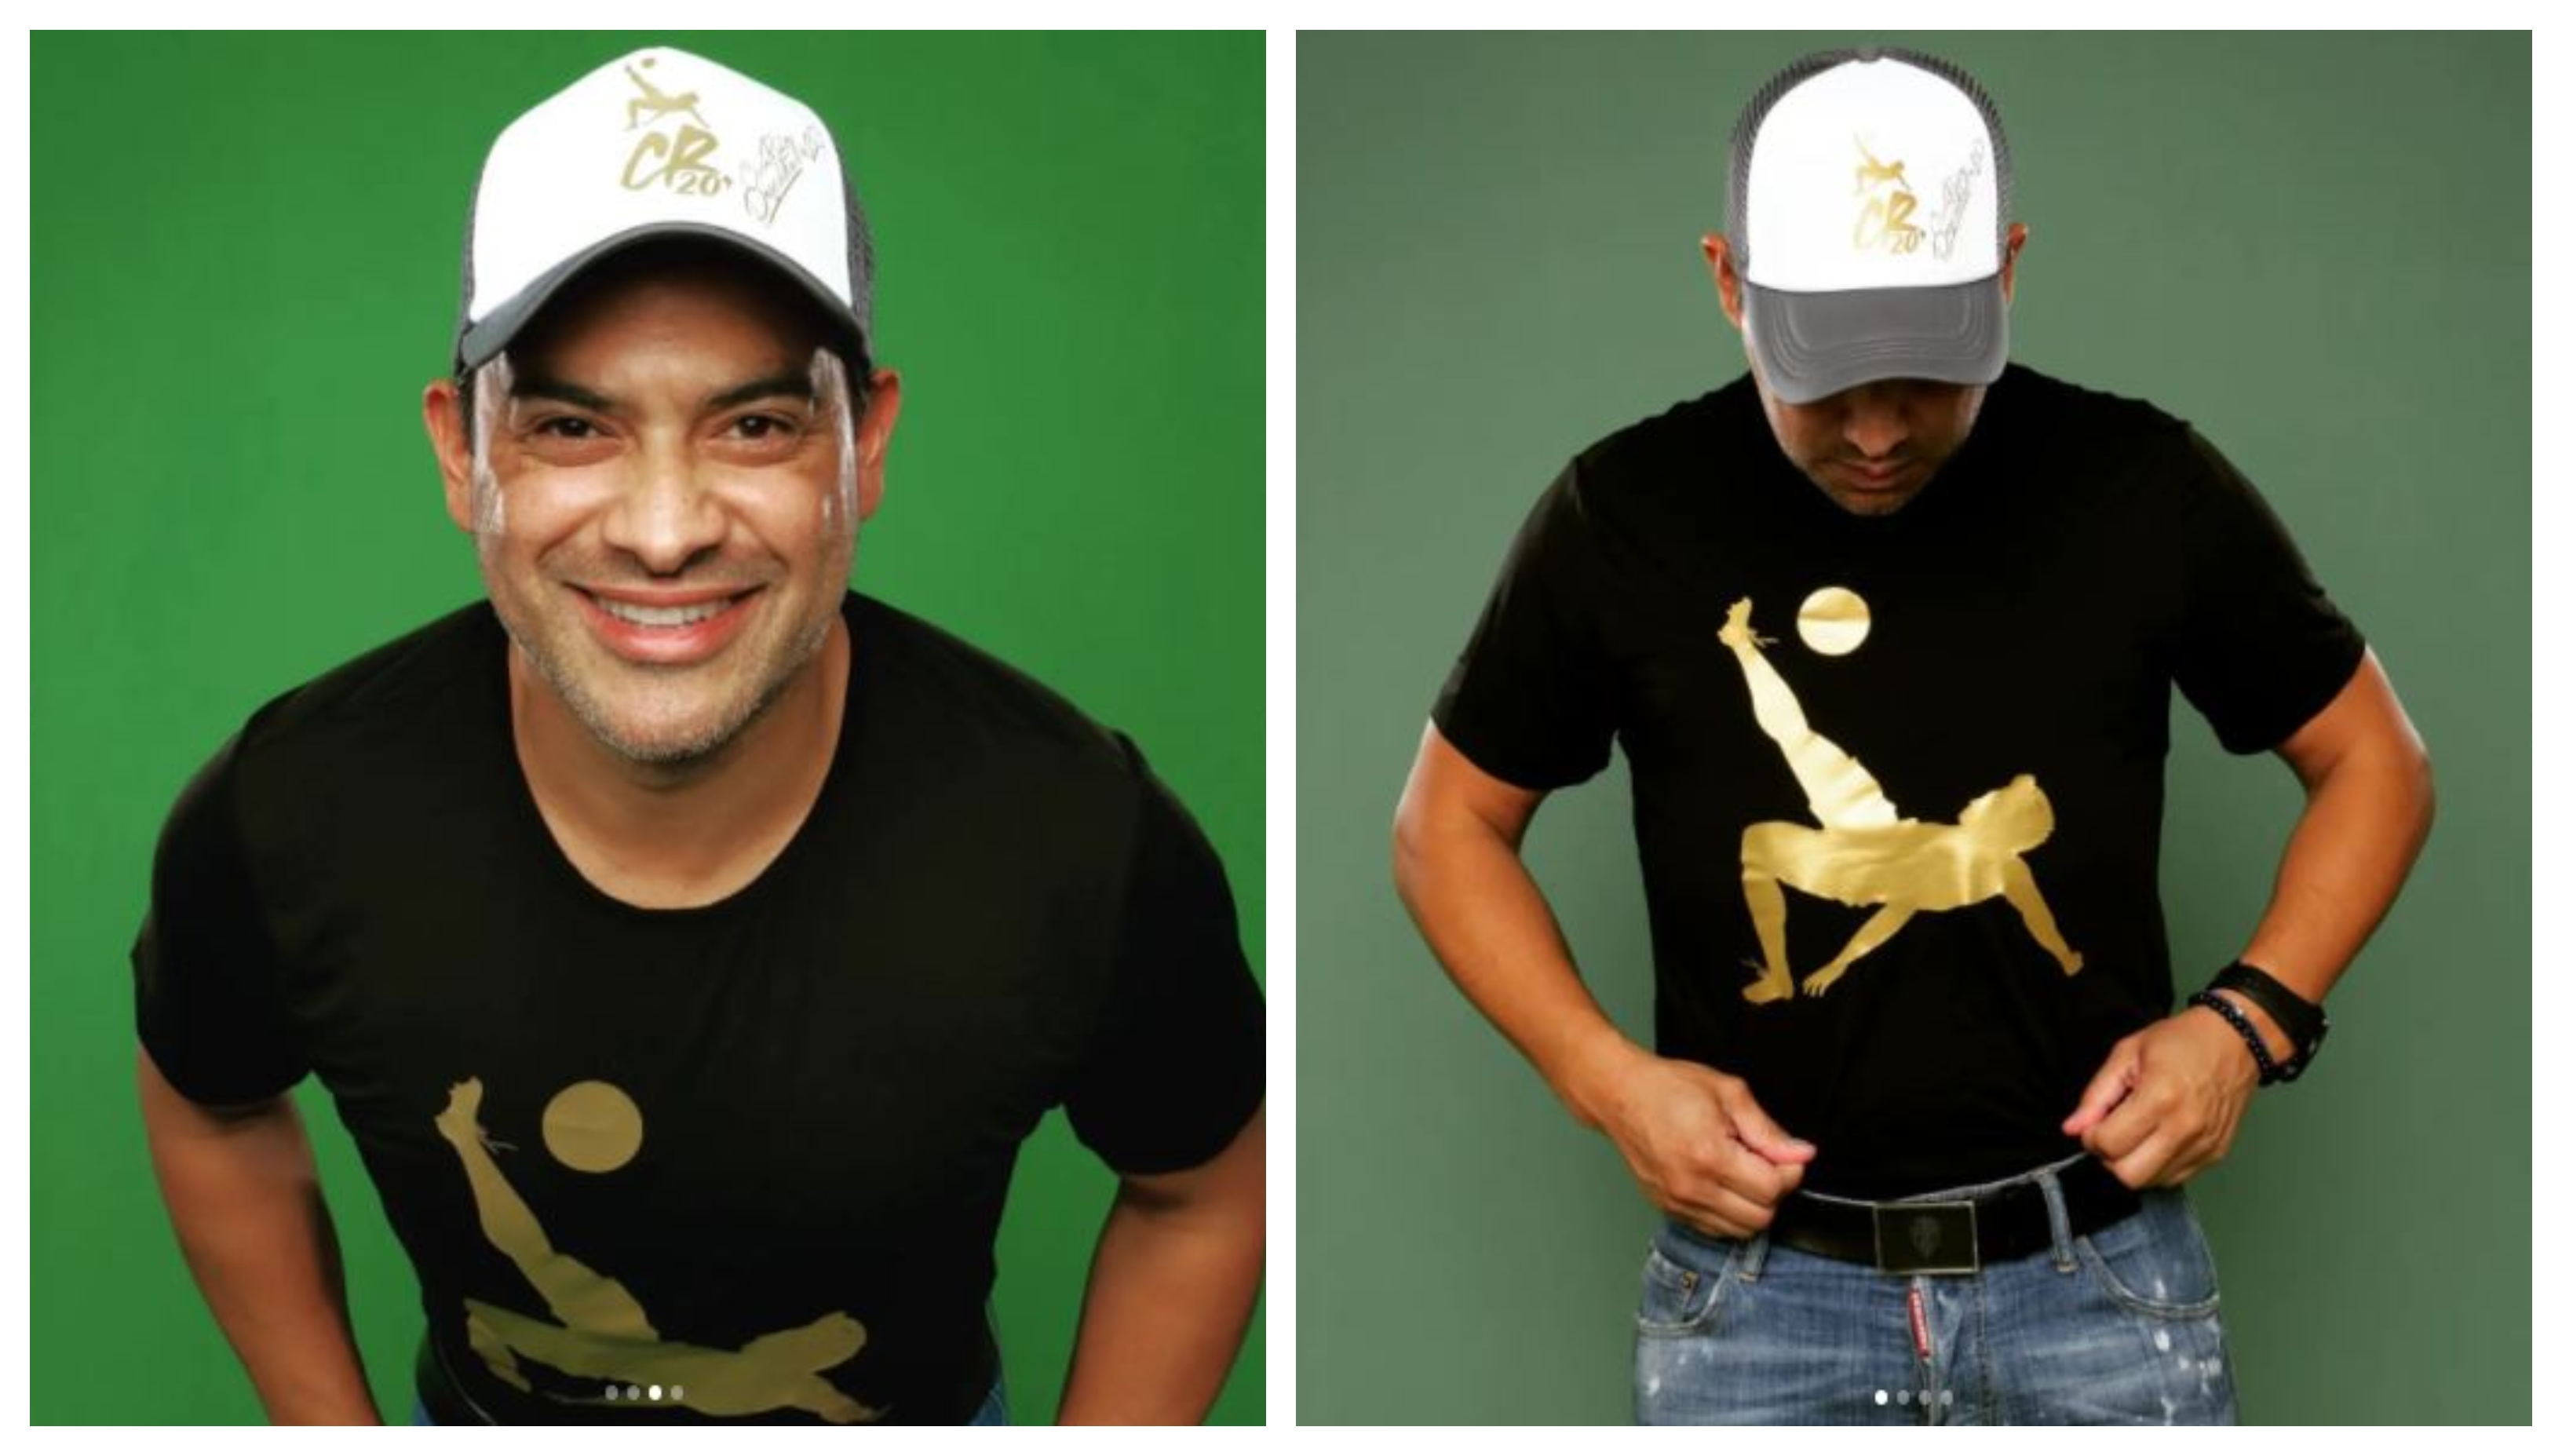 De colección! Carlos 'el Pescado' Ruiz lanza gorras y playeras con